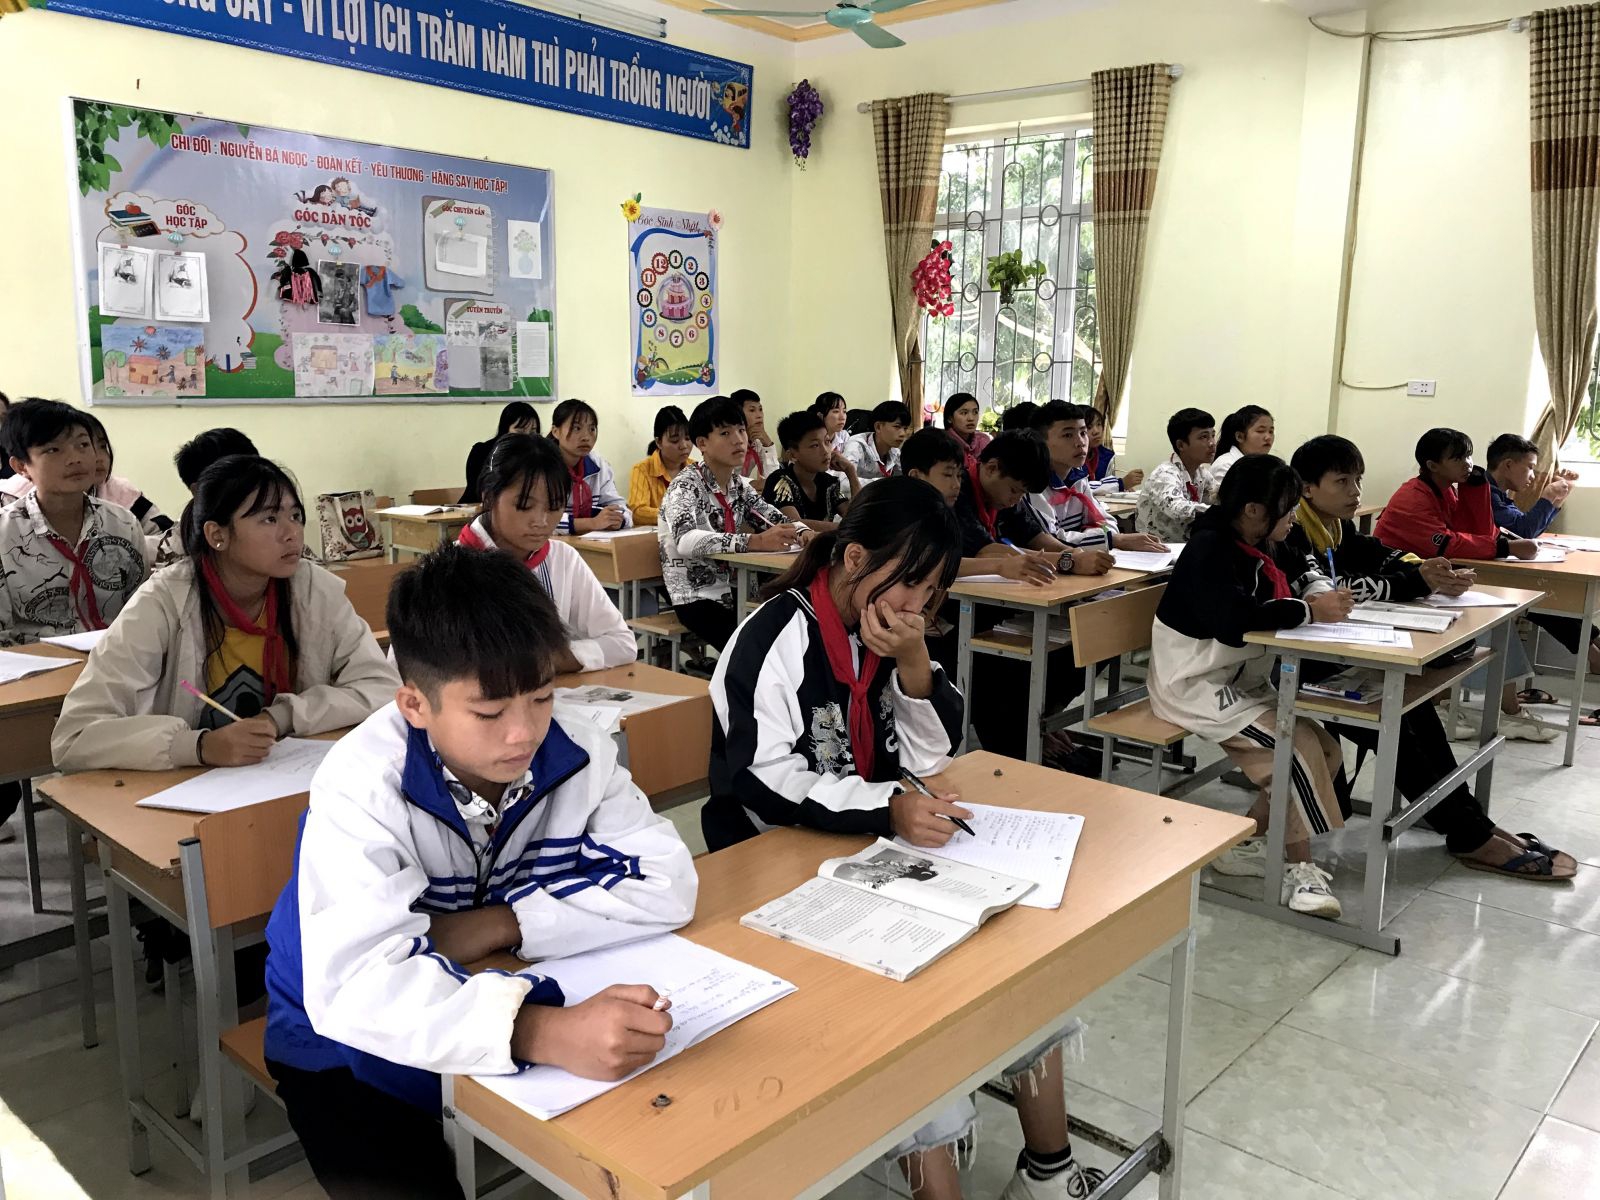 Xuất hiện 13 ca mắc Covid-19, hơn một nghìn học sinh Lai Châu nghỉ học